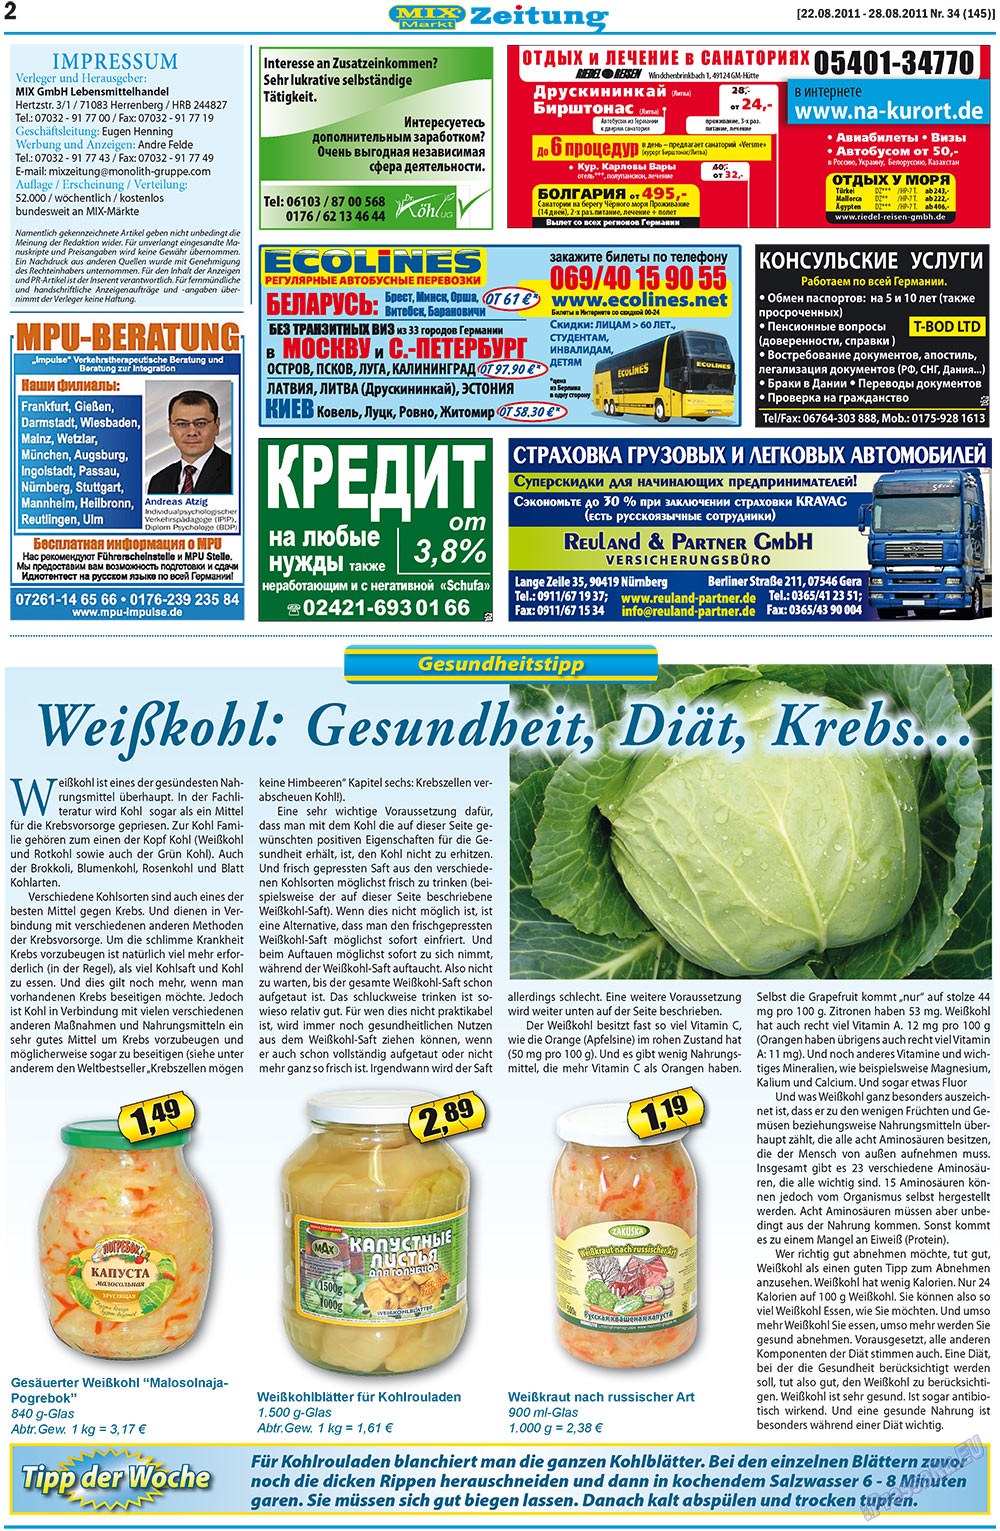 MIX-Markt Zeitung, газета. 2011 №34 стр.2